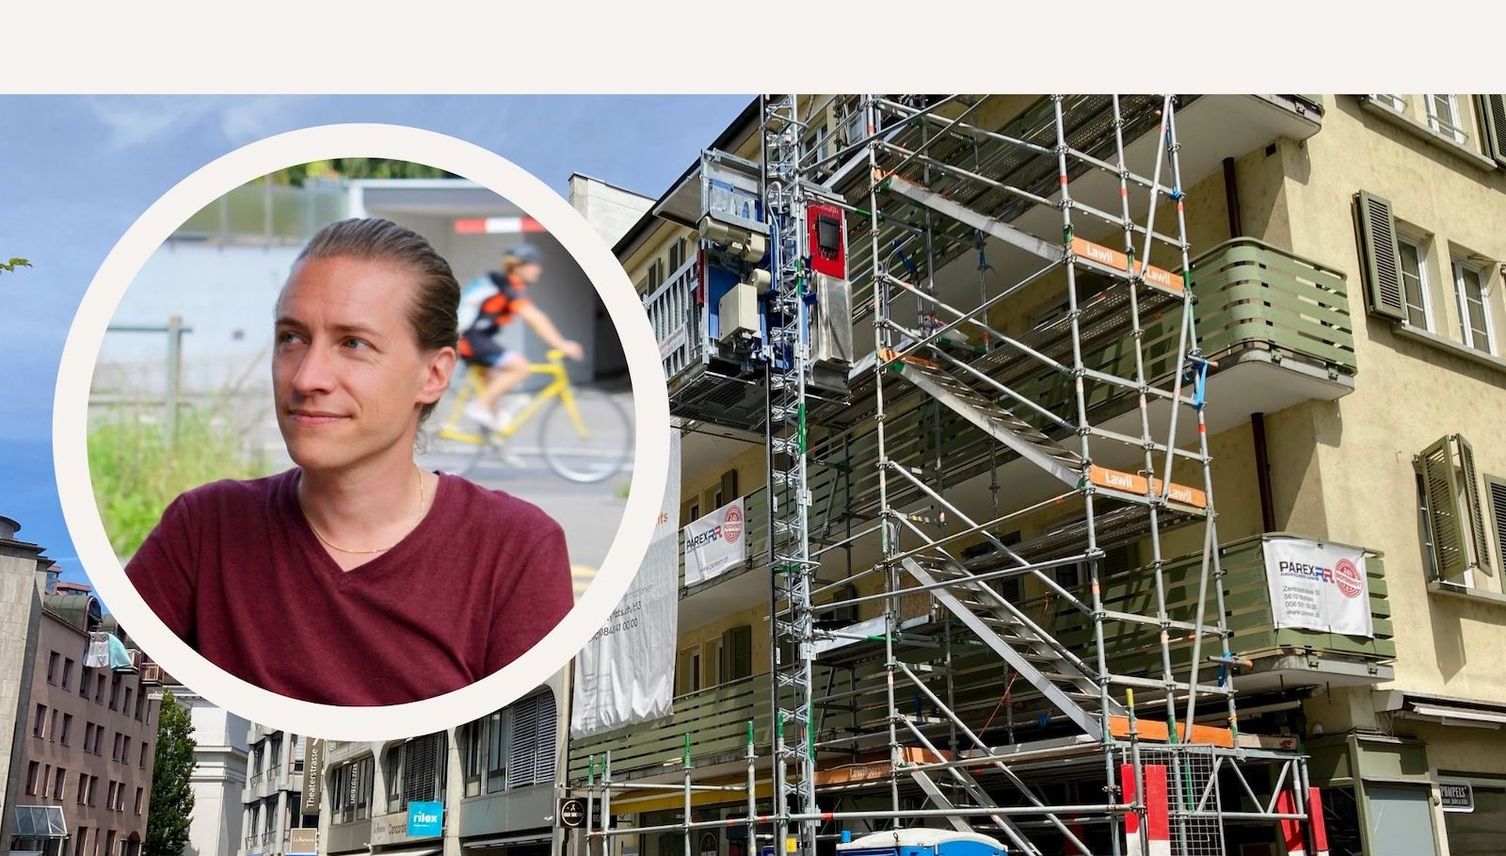 Touristen oder Wohnungen? Bauprojekt in Luzern heizt Debatte an